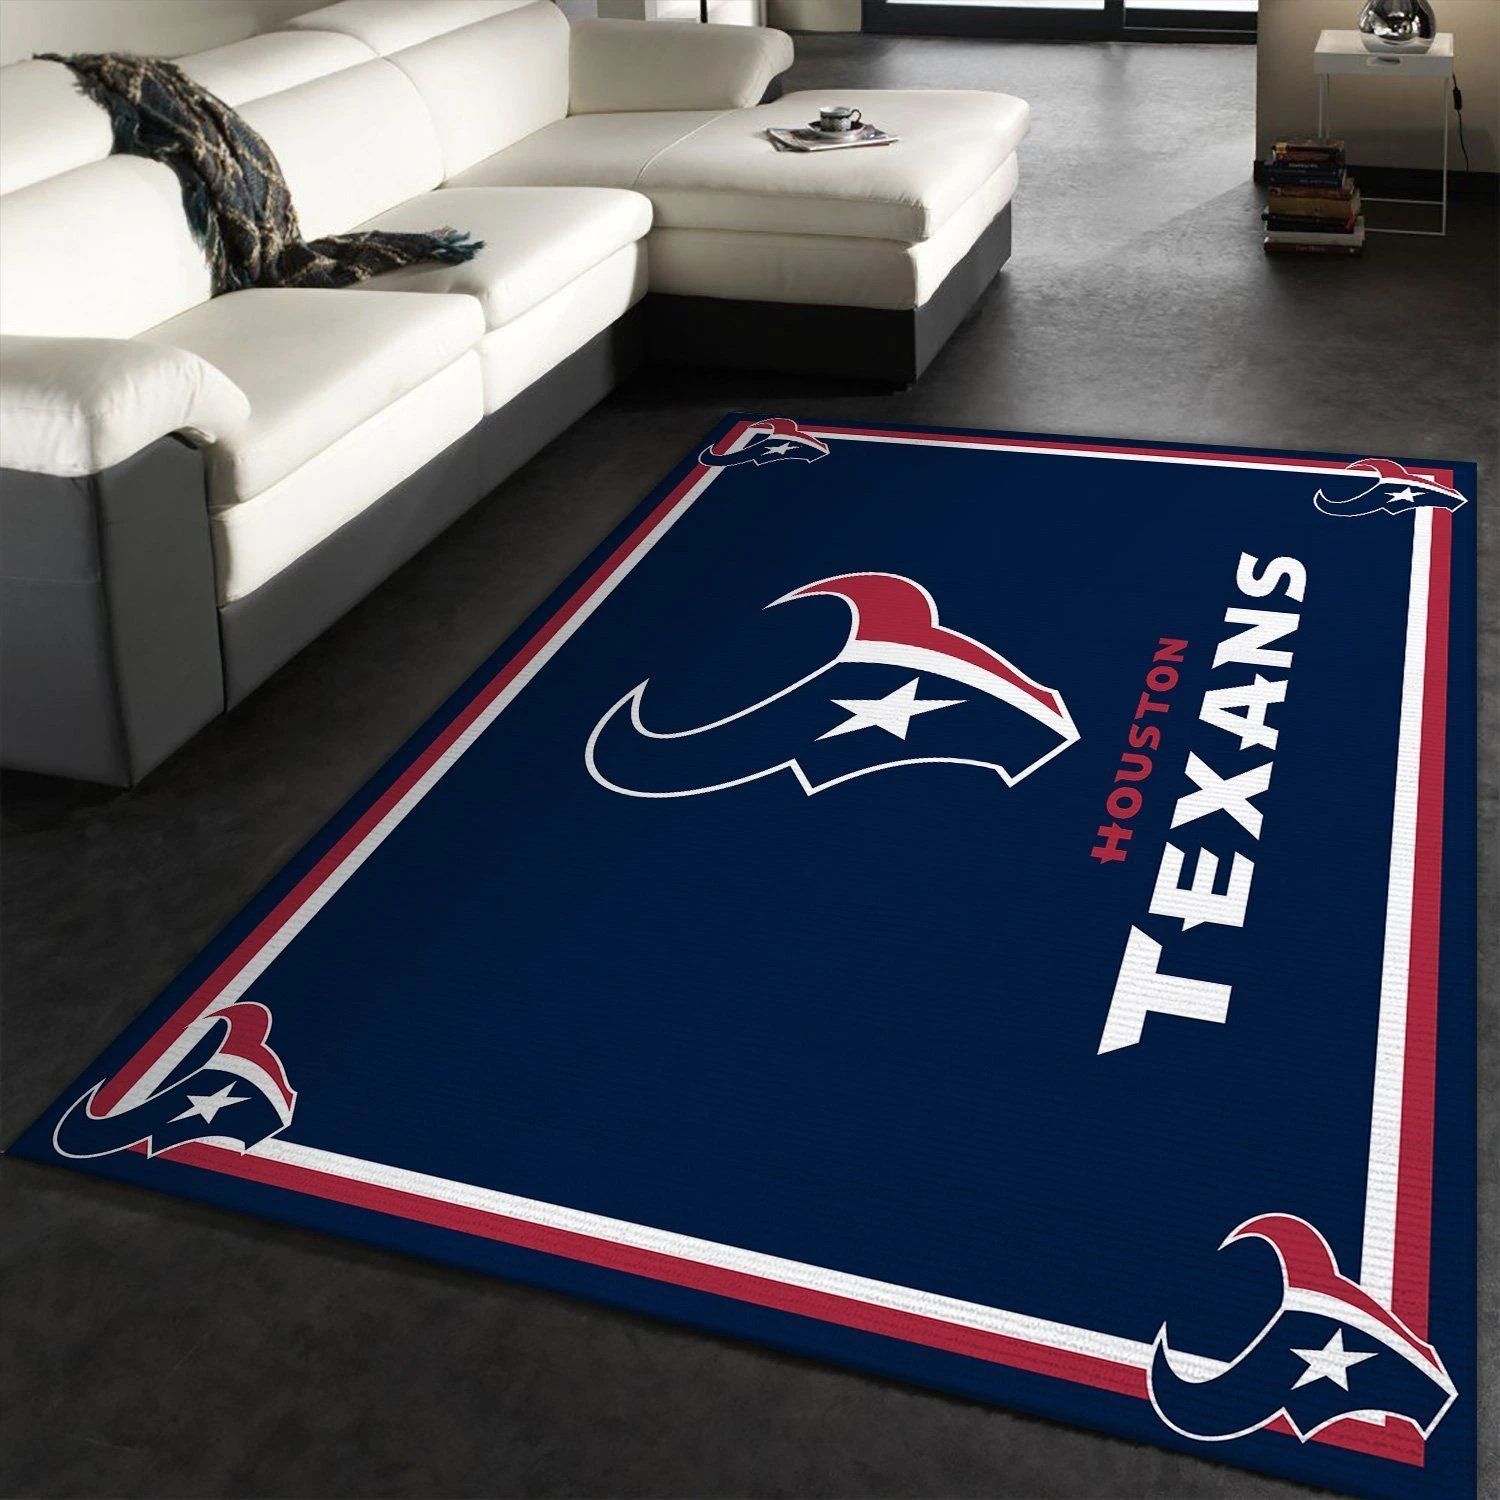 Houston Texans rug Football rug Floor Decor The US Decor - Indoor Outdoor Rugs